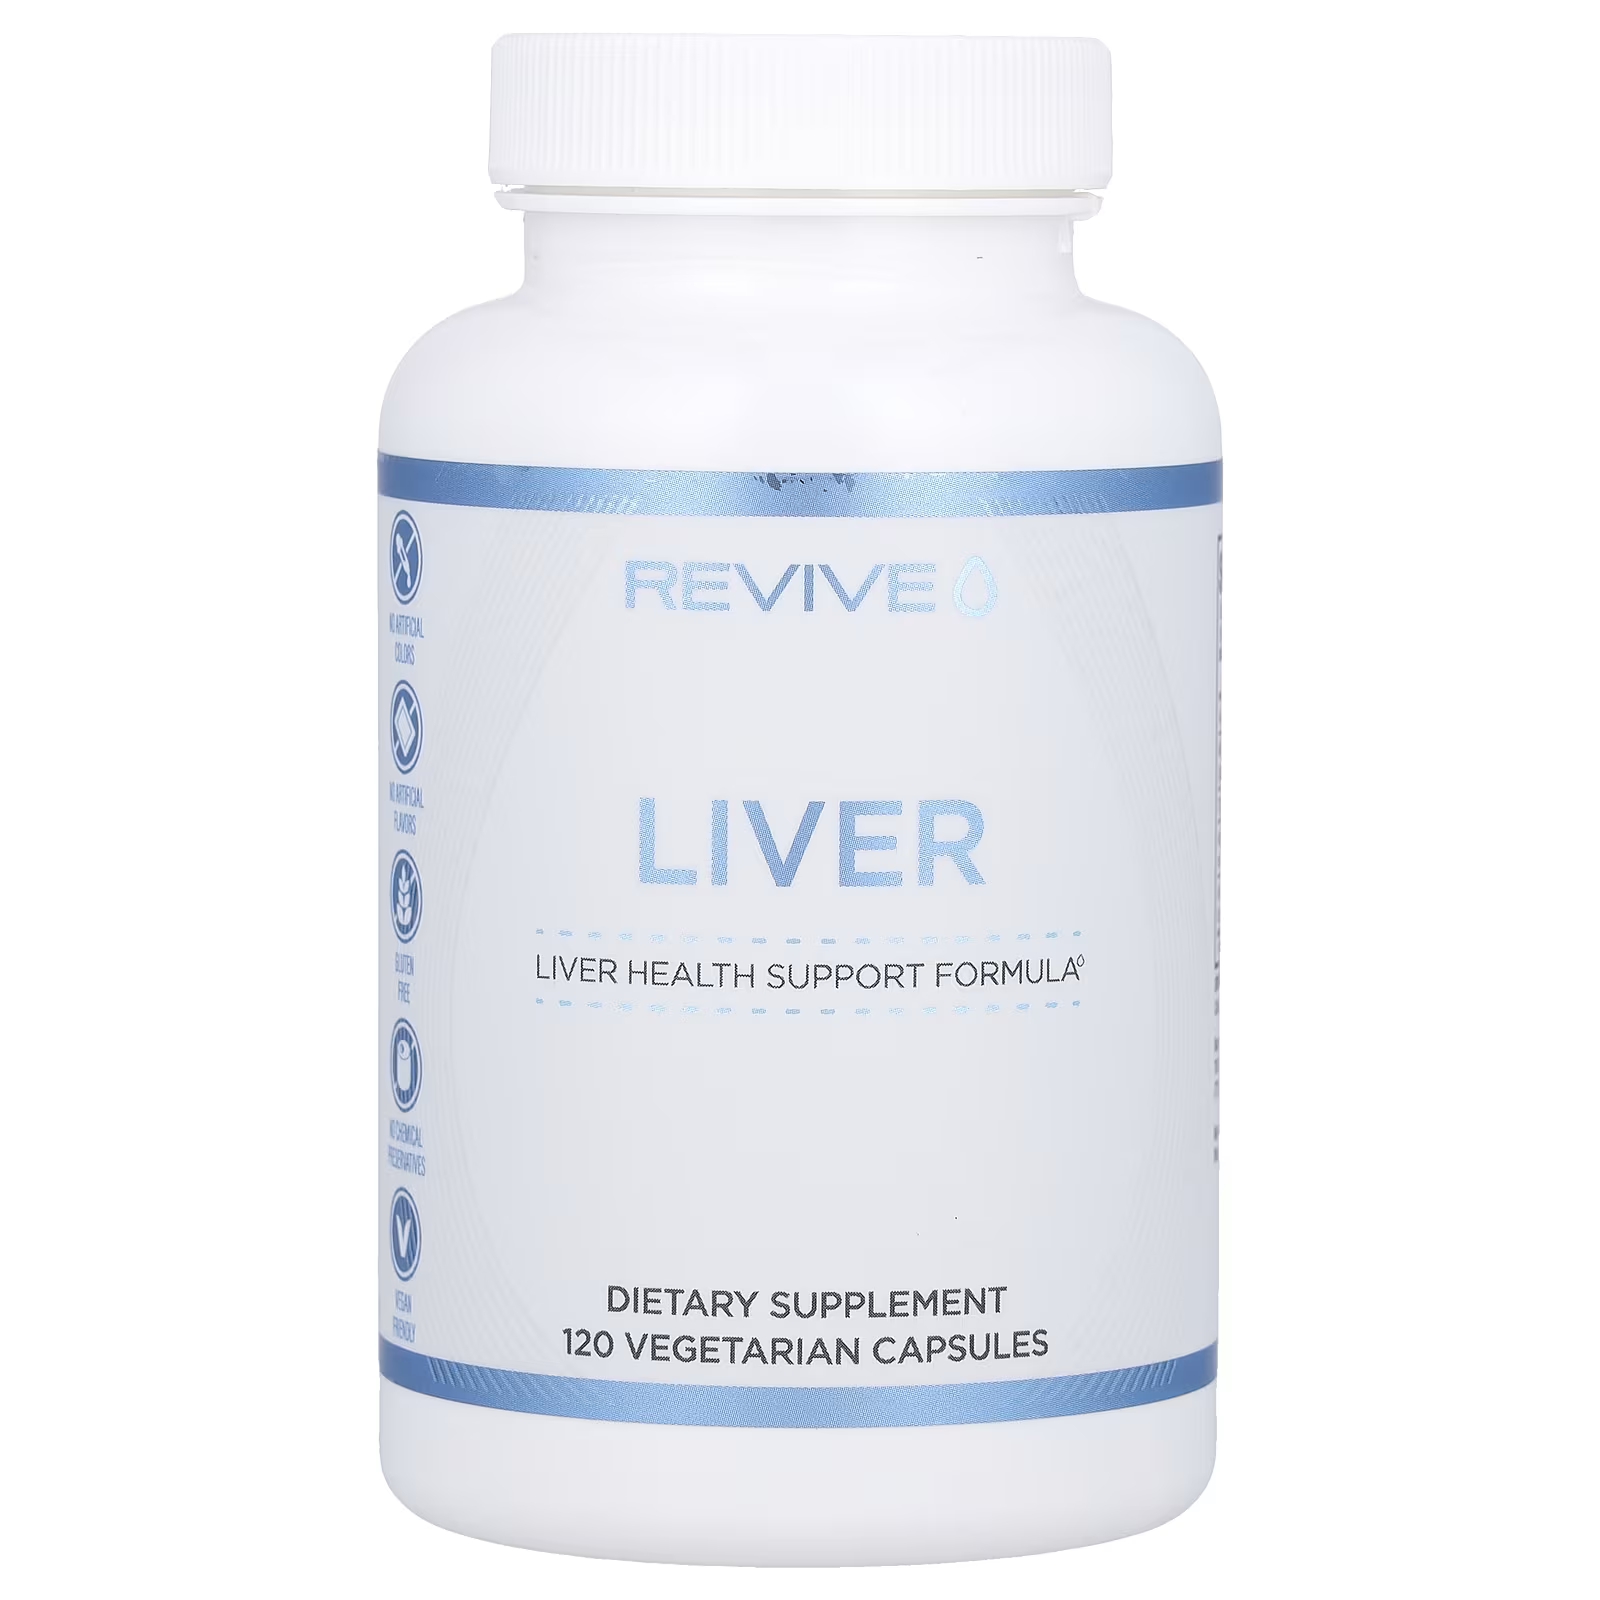 Пищевая добавка Revive Liver для печени, 120 вегетарианских капсул silver pro complex пищевая добавка для поддержки печени 120 капсул myvita